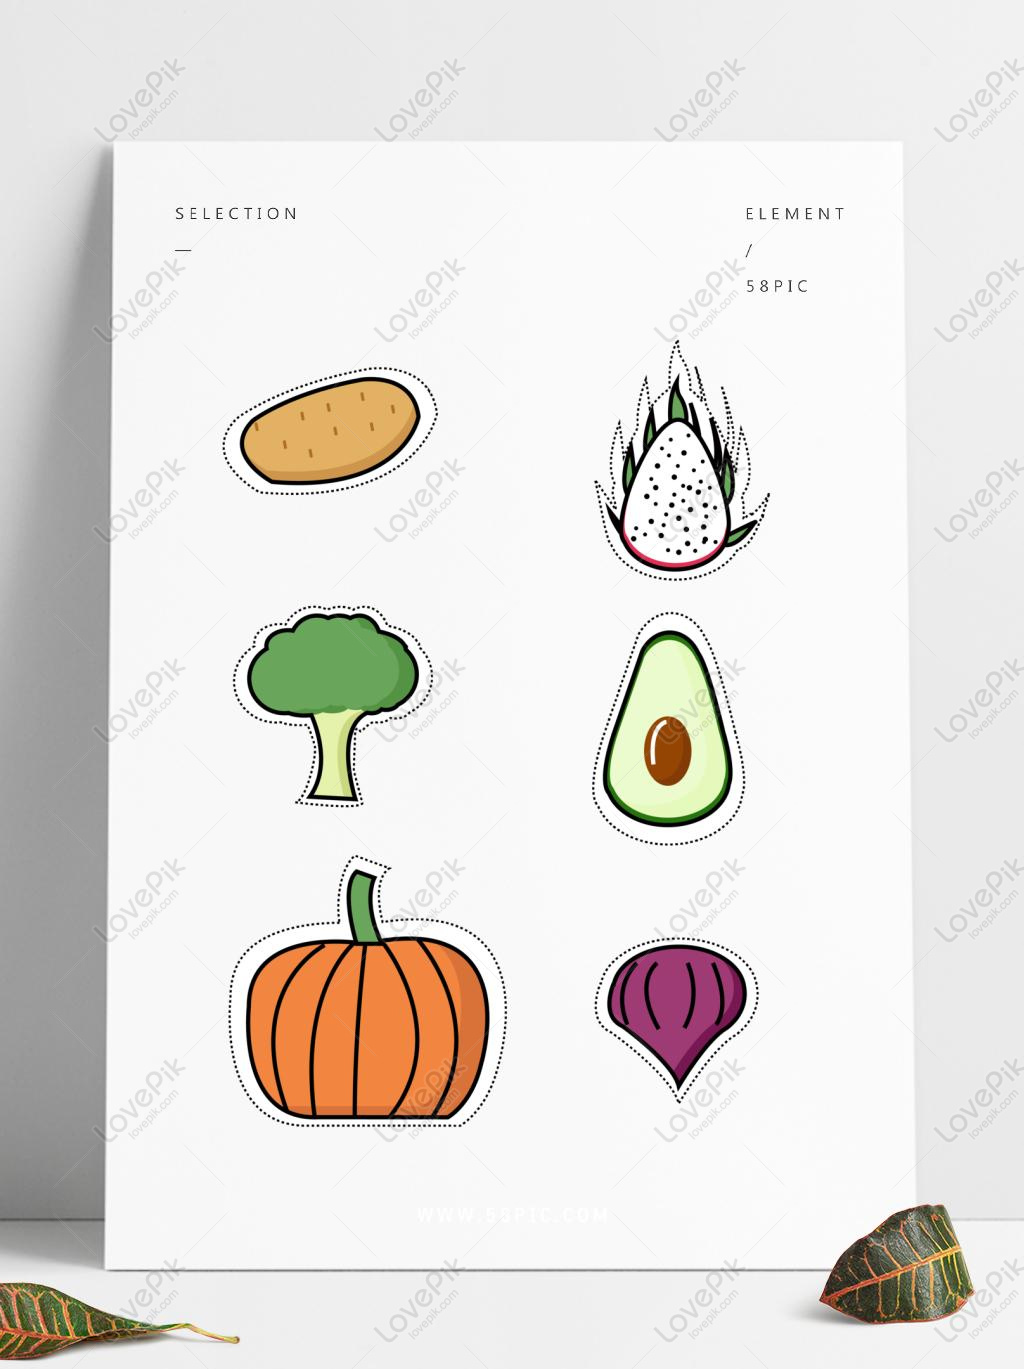 Hãy chiêm ngưỡng những nhãn dán cute với hình ảnh trái cây, rau củ được thiết kế theo vector đơn giản đầy nhân văn. Chúng sẽ khiến bạn cảm thấy vui vẻ và thích thú trong mỗi lần sử dụng. Còn chần chừ gì nữa, hãy nhấn vào hình ảnh để xem ngay!